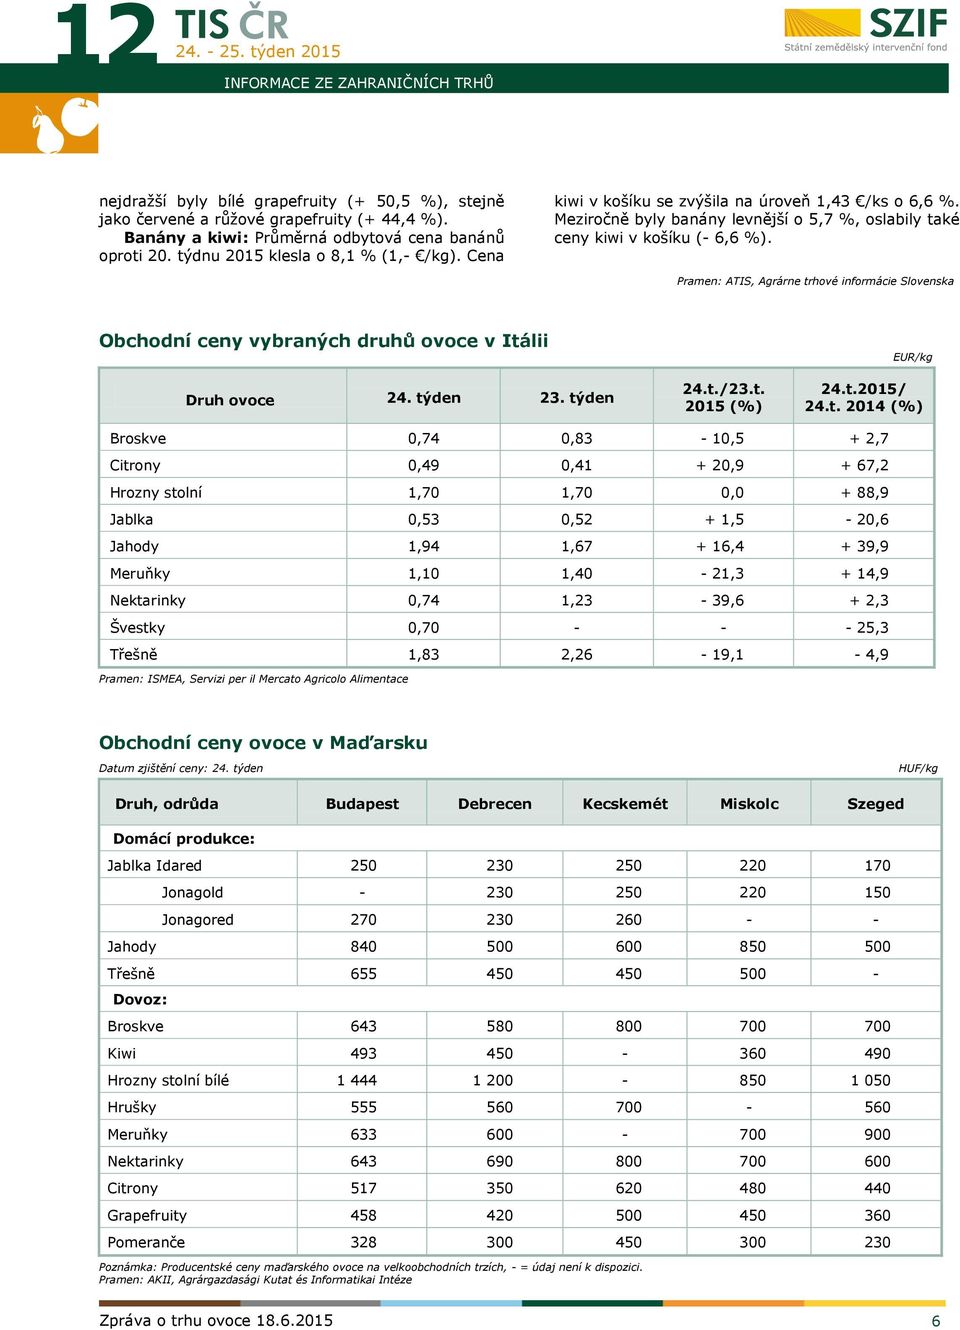 Pramen: ATIS, Agrárne trhové informácie Slovenska Obchodní ceny vybraných druhů ovoce v Itálii Druh ovoce týden 23. týden t./23.t. 2015 (%) EUR/kg t.2015/ t.